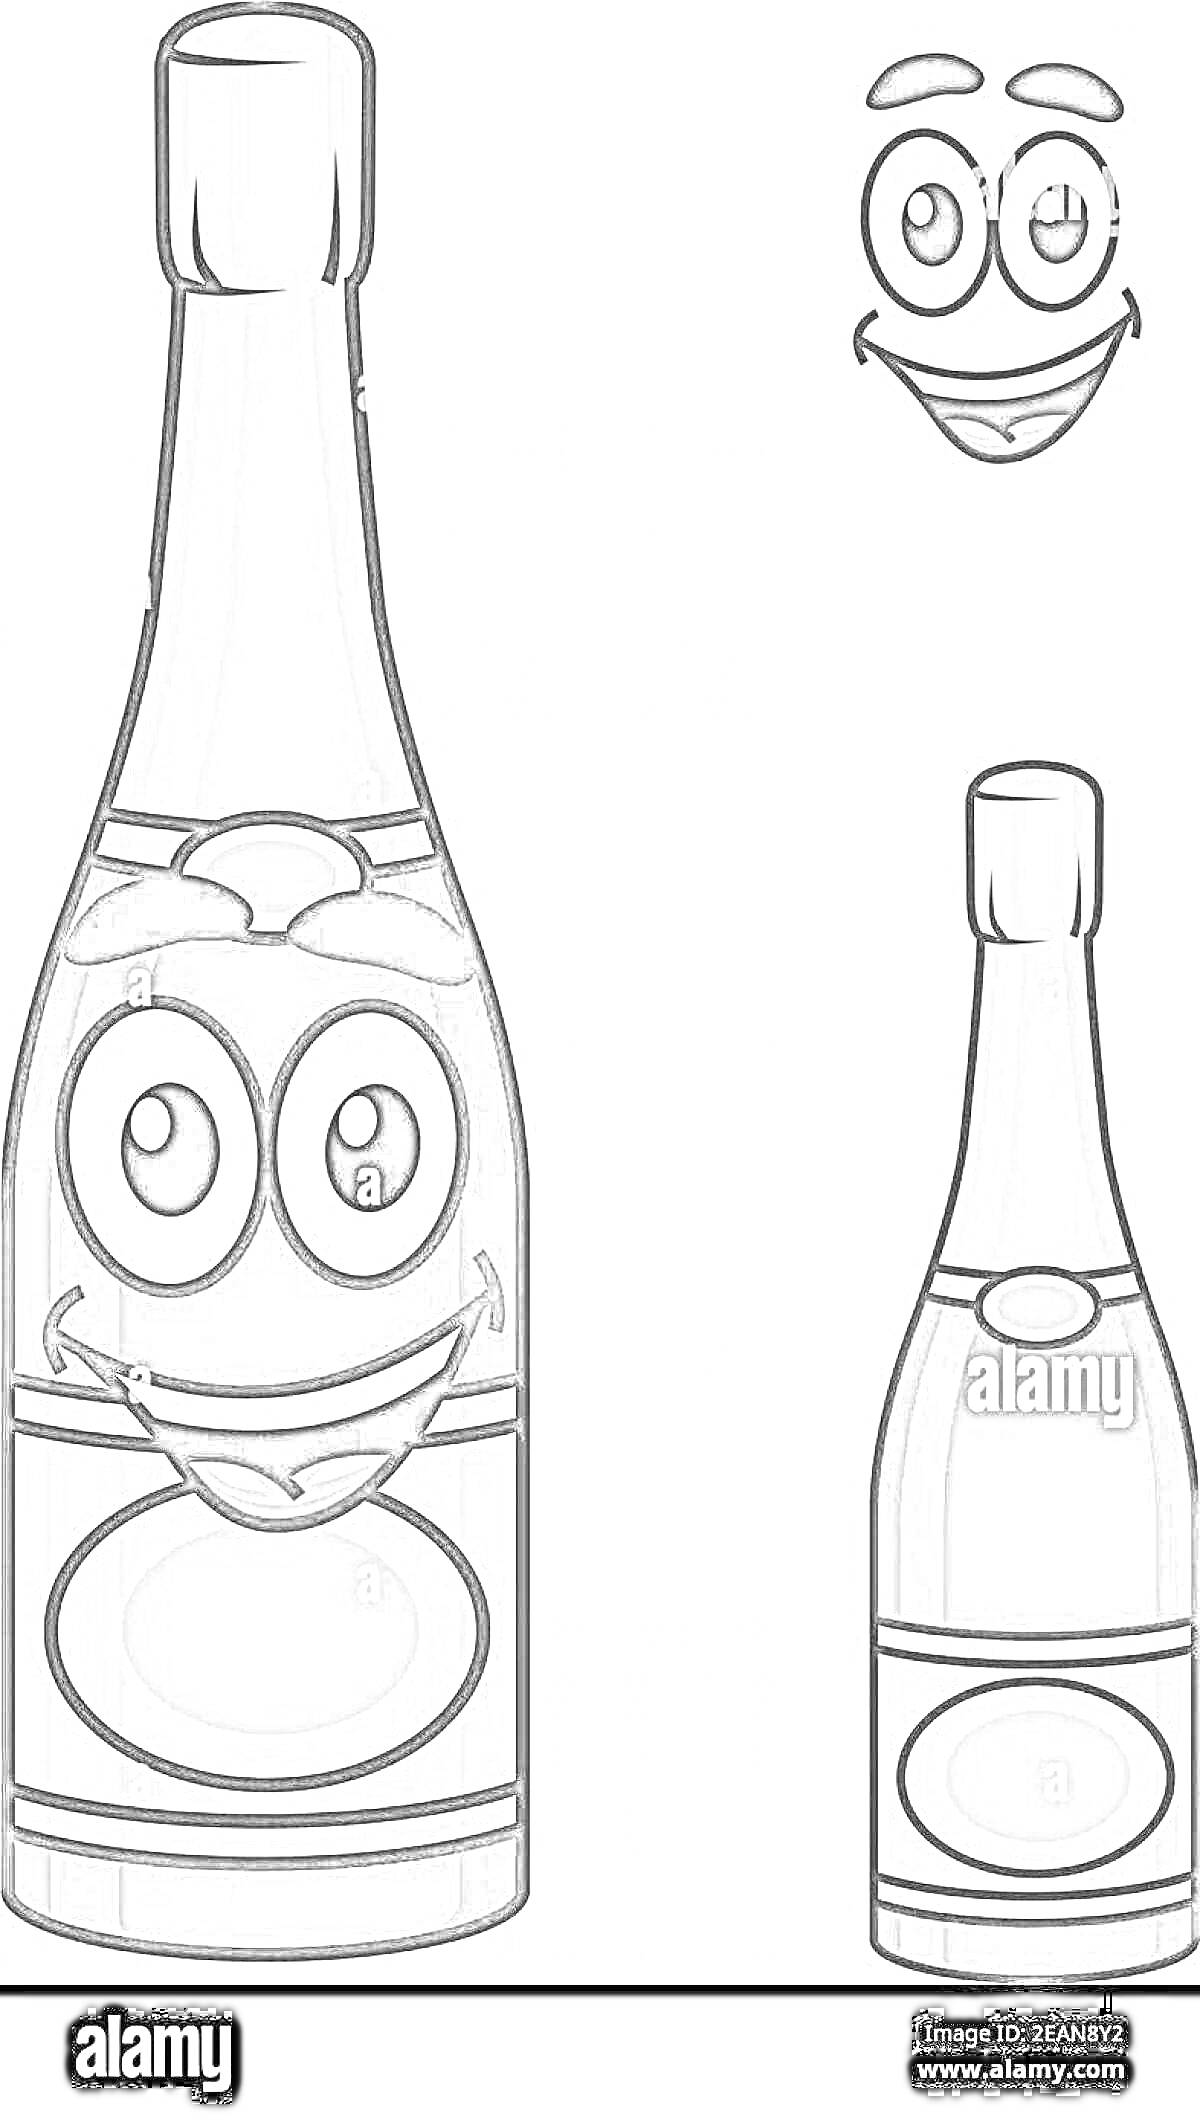 Раскраска Бутылка шампанского с улыбающимся лицом и отдельным изображением улыбающегося лица